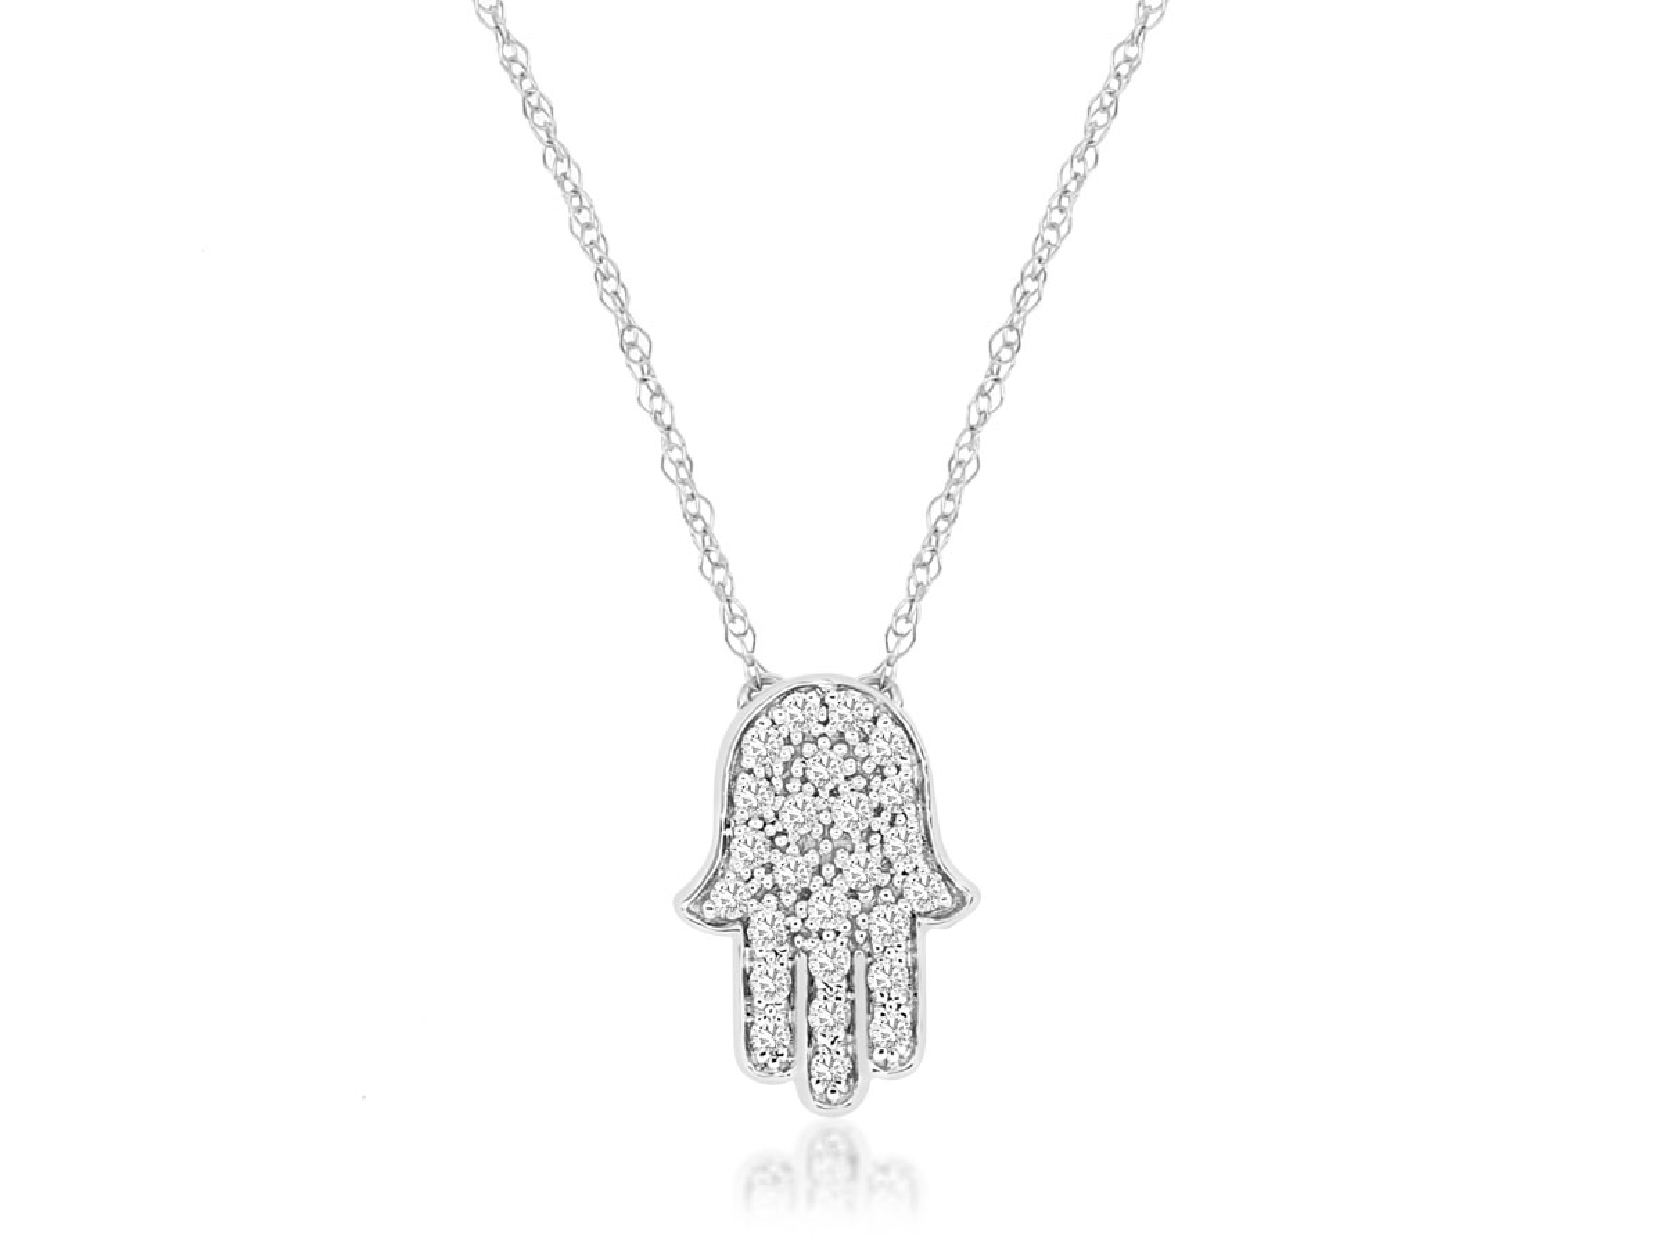 Diamond Hamsa Necklace
0.13ct

18 Inches